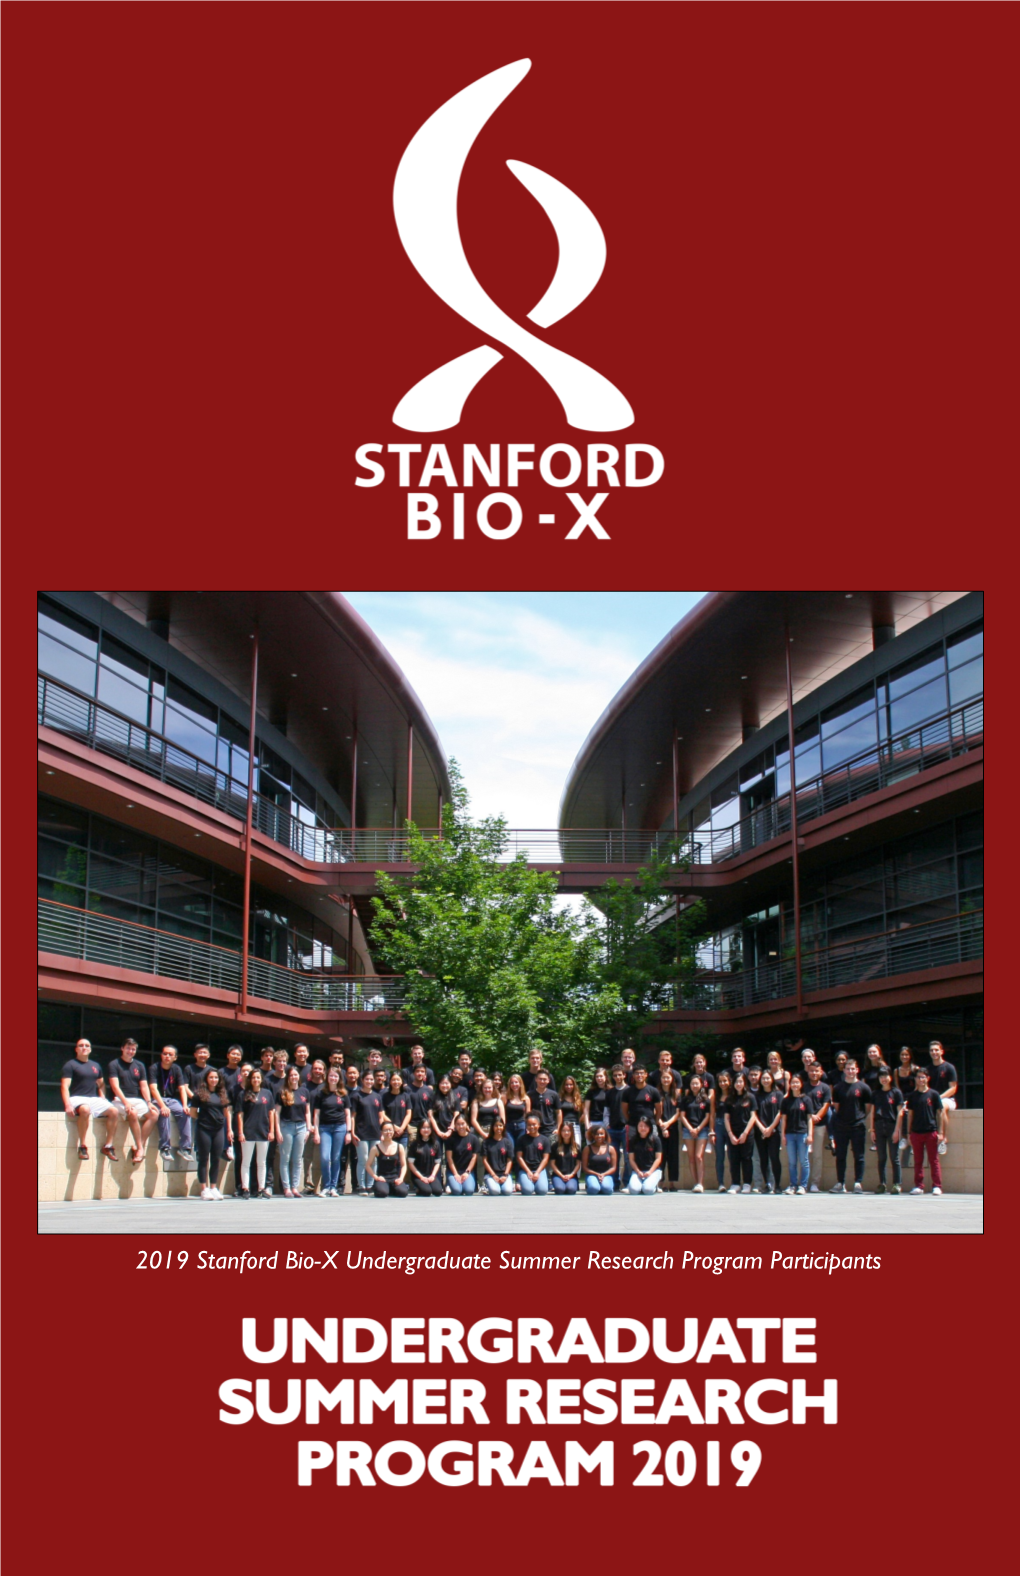 2019 Stanford Bio-X USRP